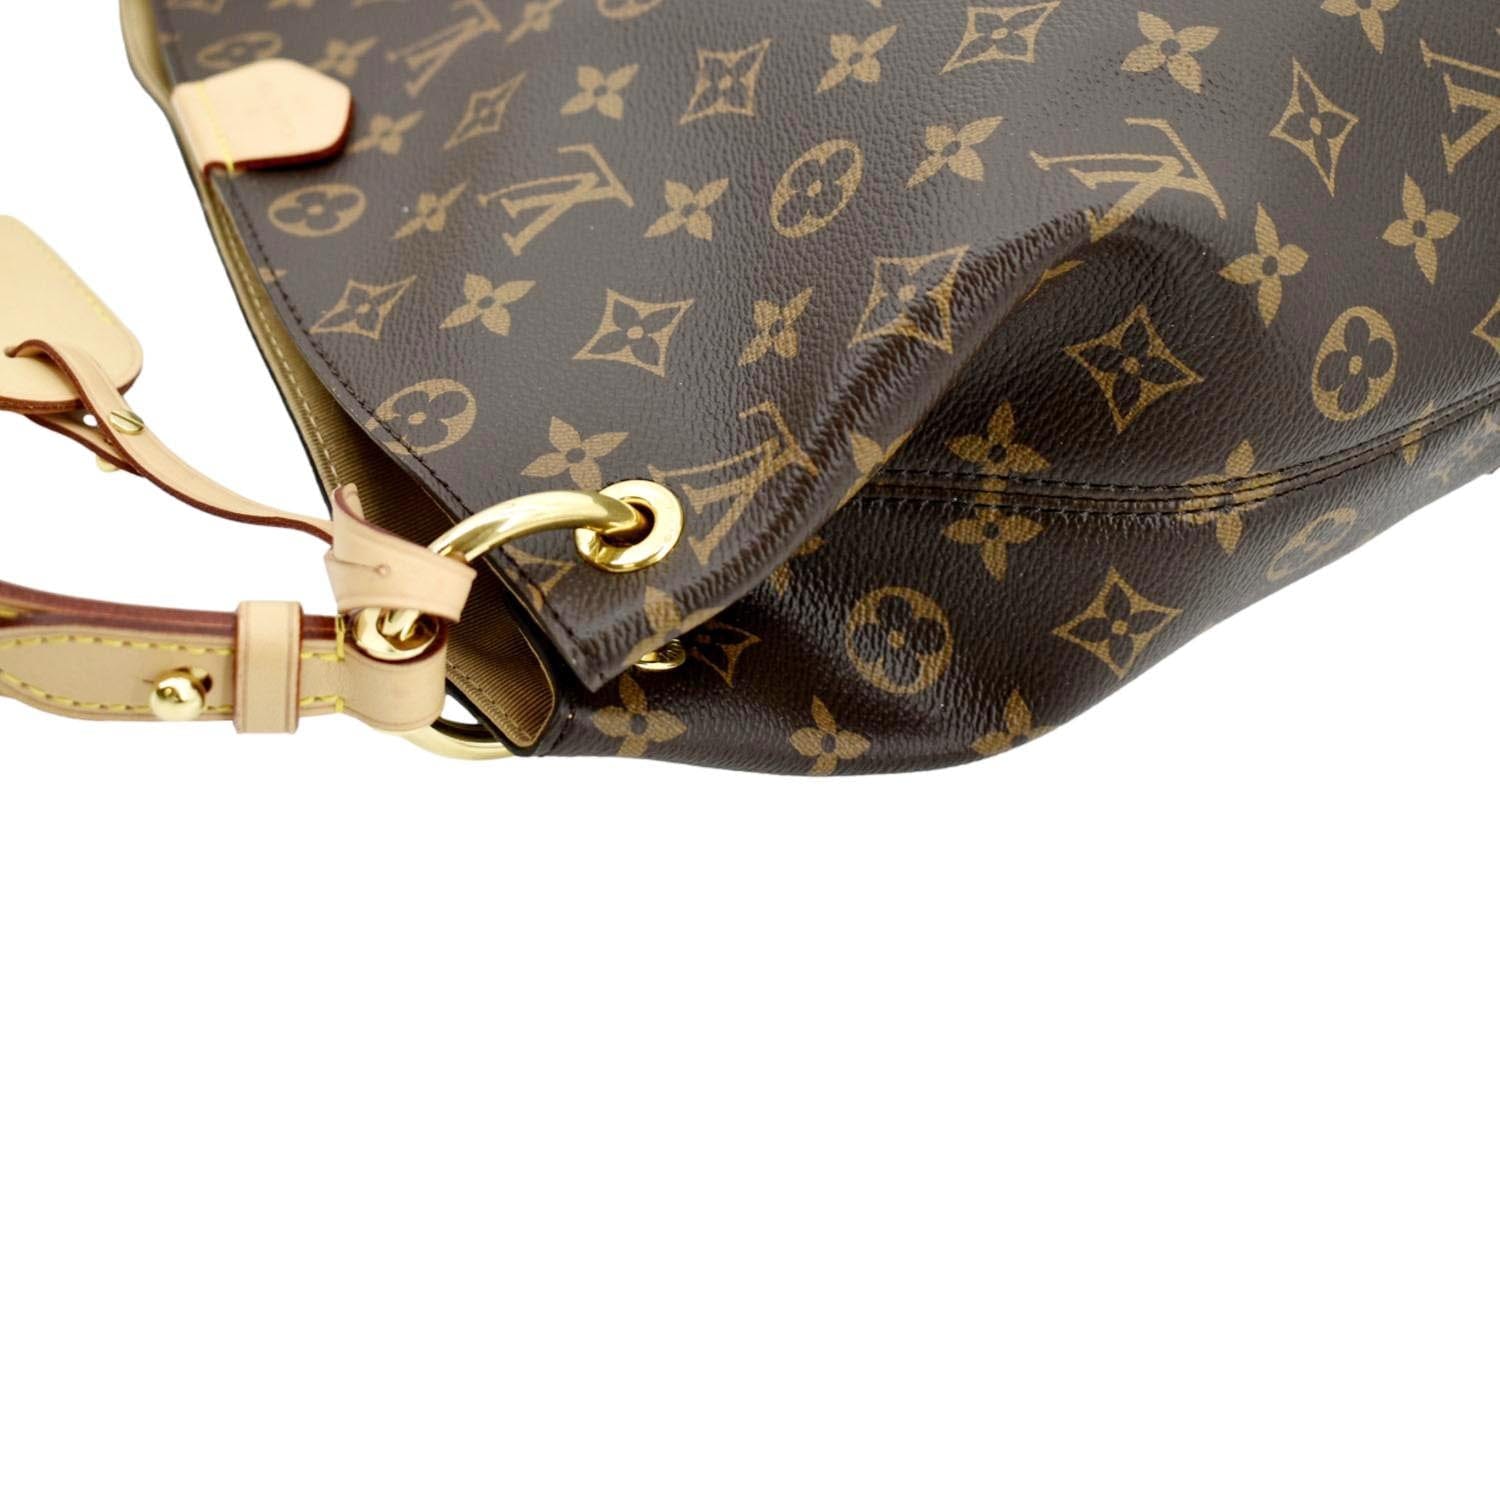 Louis Vuitton Graceful Hobo Bags for Women